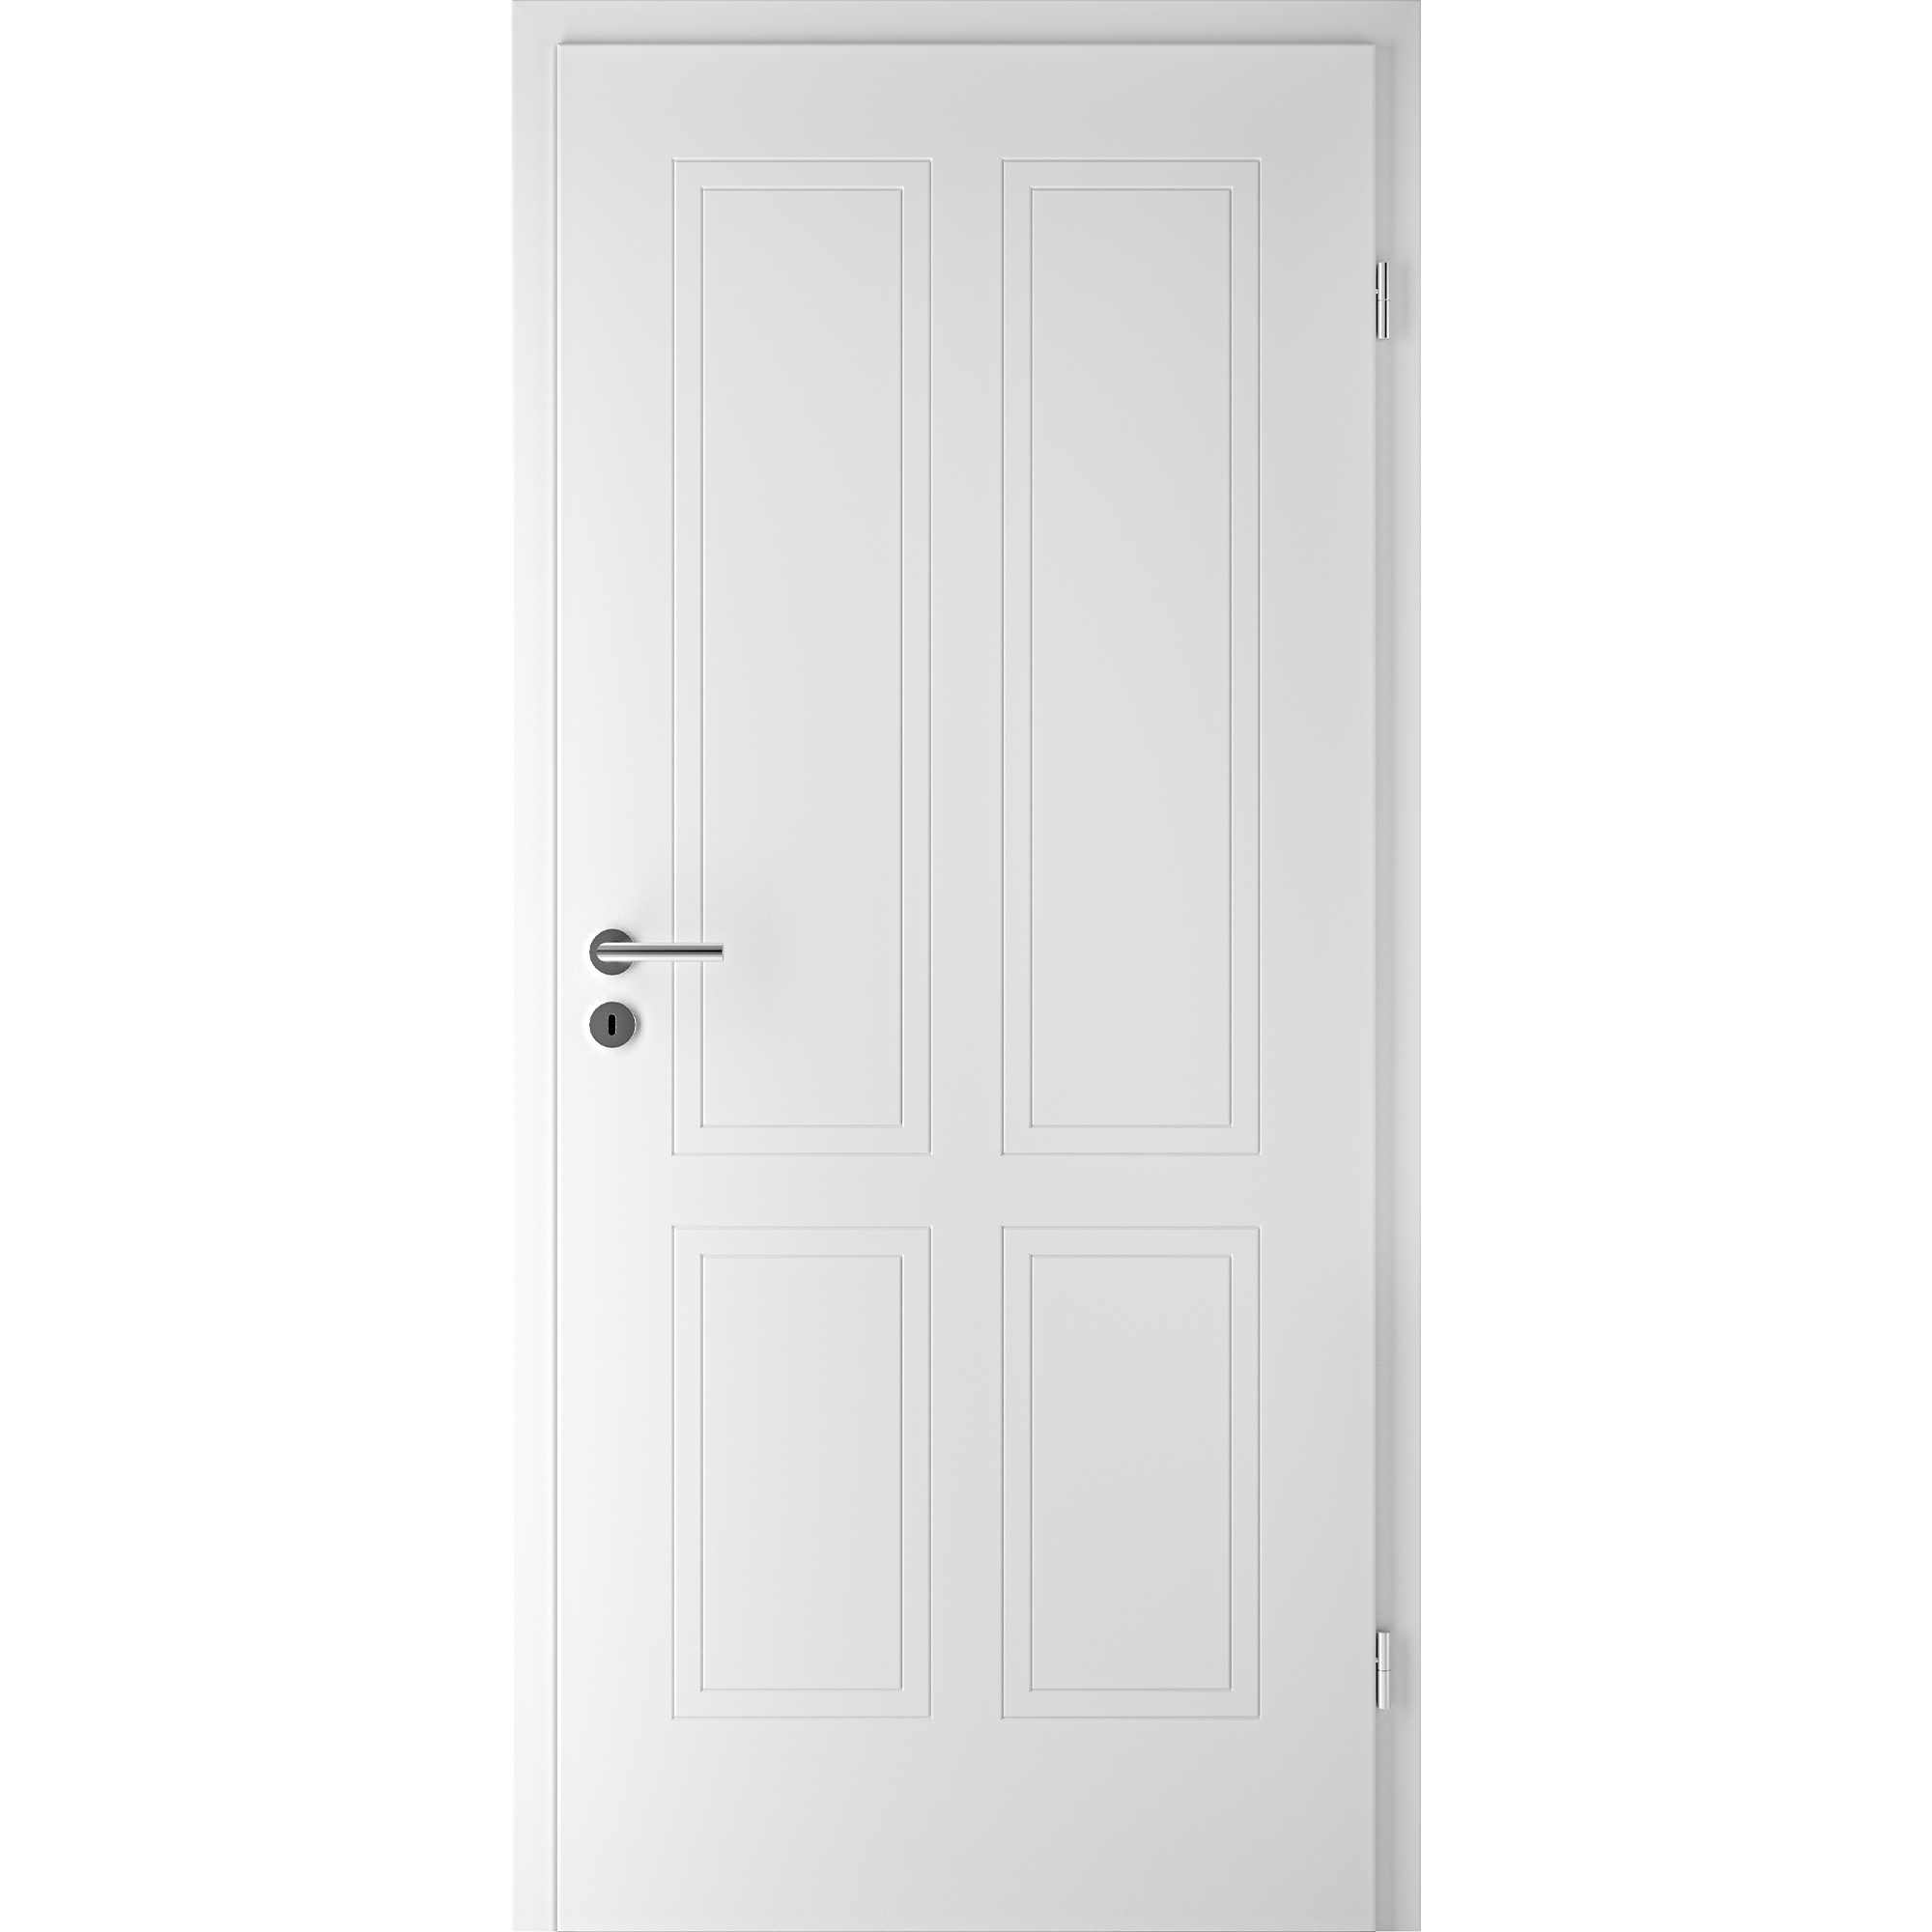 Juego de 2 manijas de puerta resistentes con acabado negro mate, sin llave,  para puertas interiores de pasillo/armario